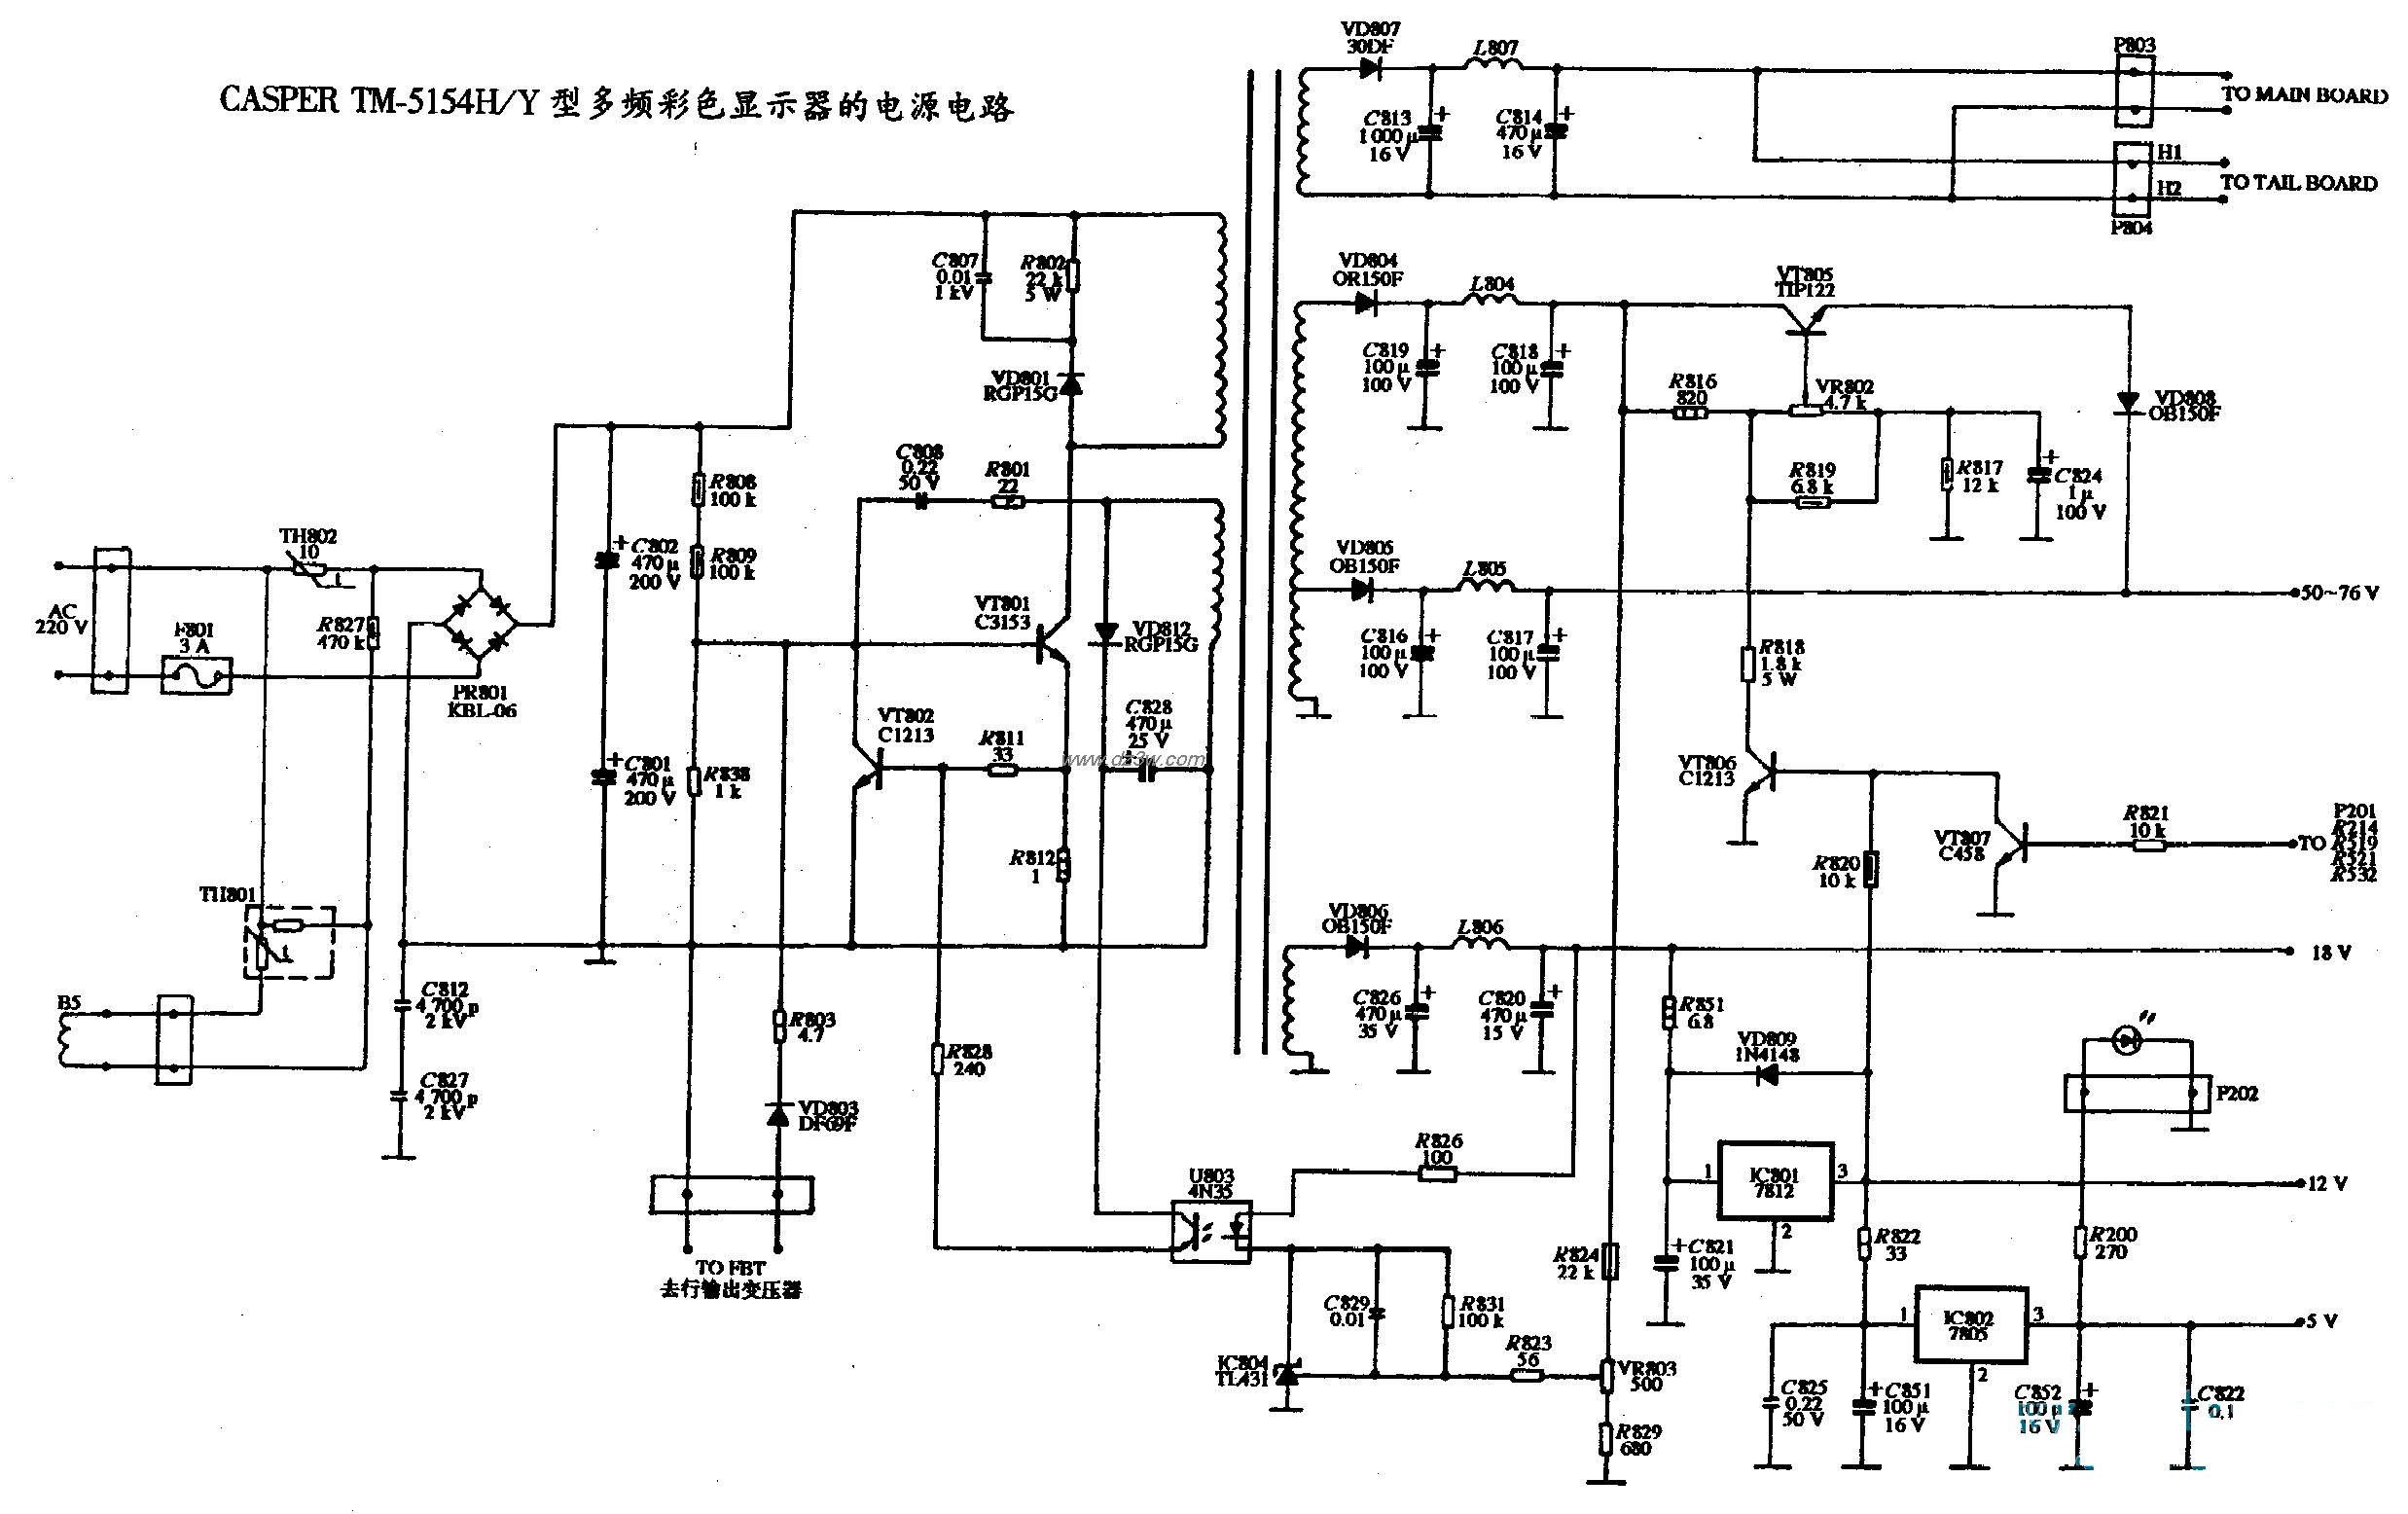 CASPER TM-5154H/Y型多頻彩色顯示器的電源電路圖